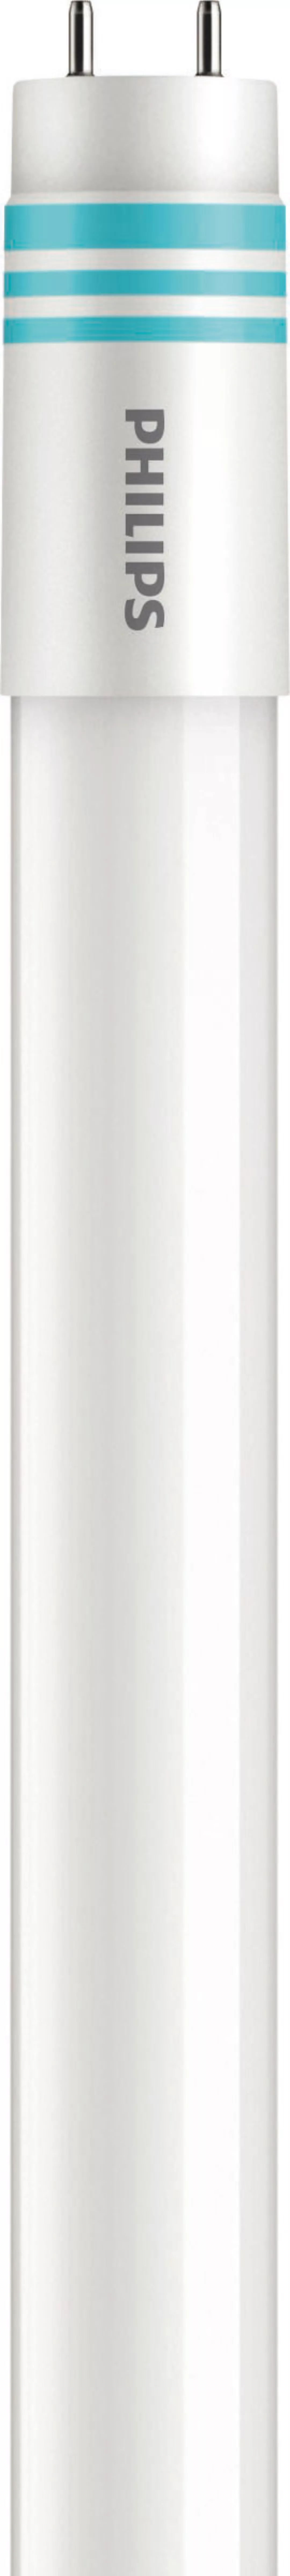 Philips Lighting LED-Tube T8 universal G13, 840, 1200mm MAS LEDtube#3167060 günstig online kaufen